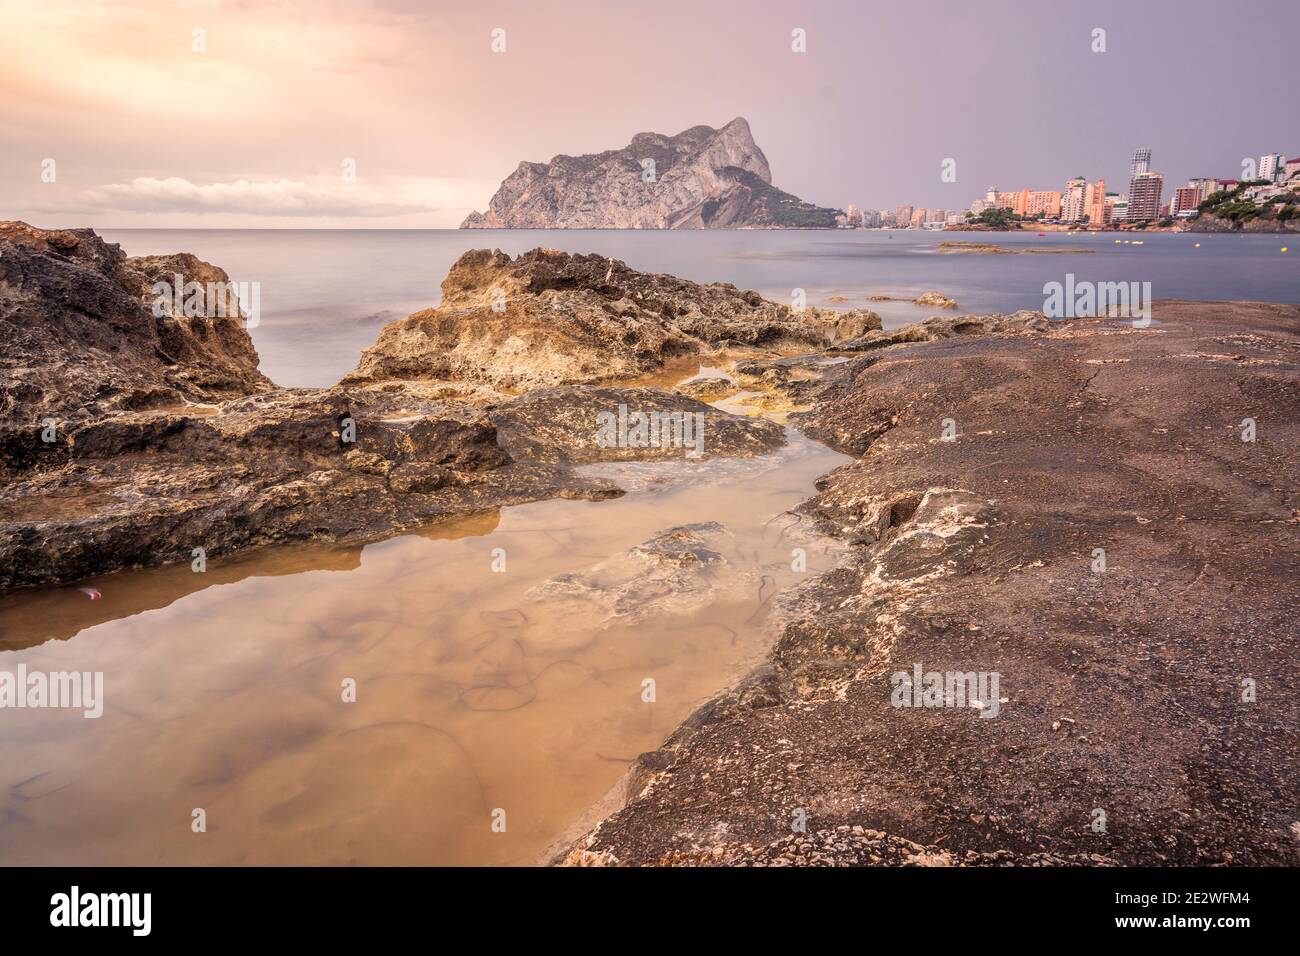 Vista del peÃ±Ã³n de Ifach desde la playa con unas rocas en primer plano Stock Photo